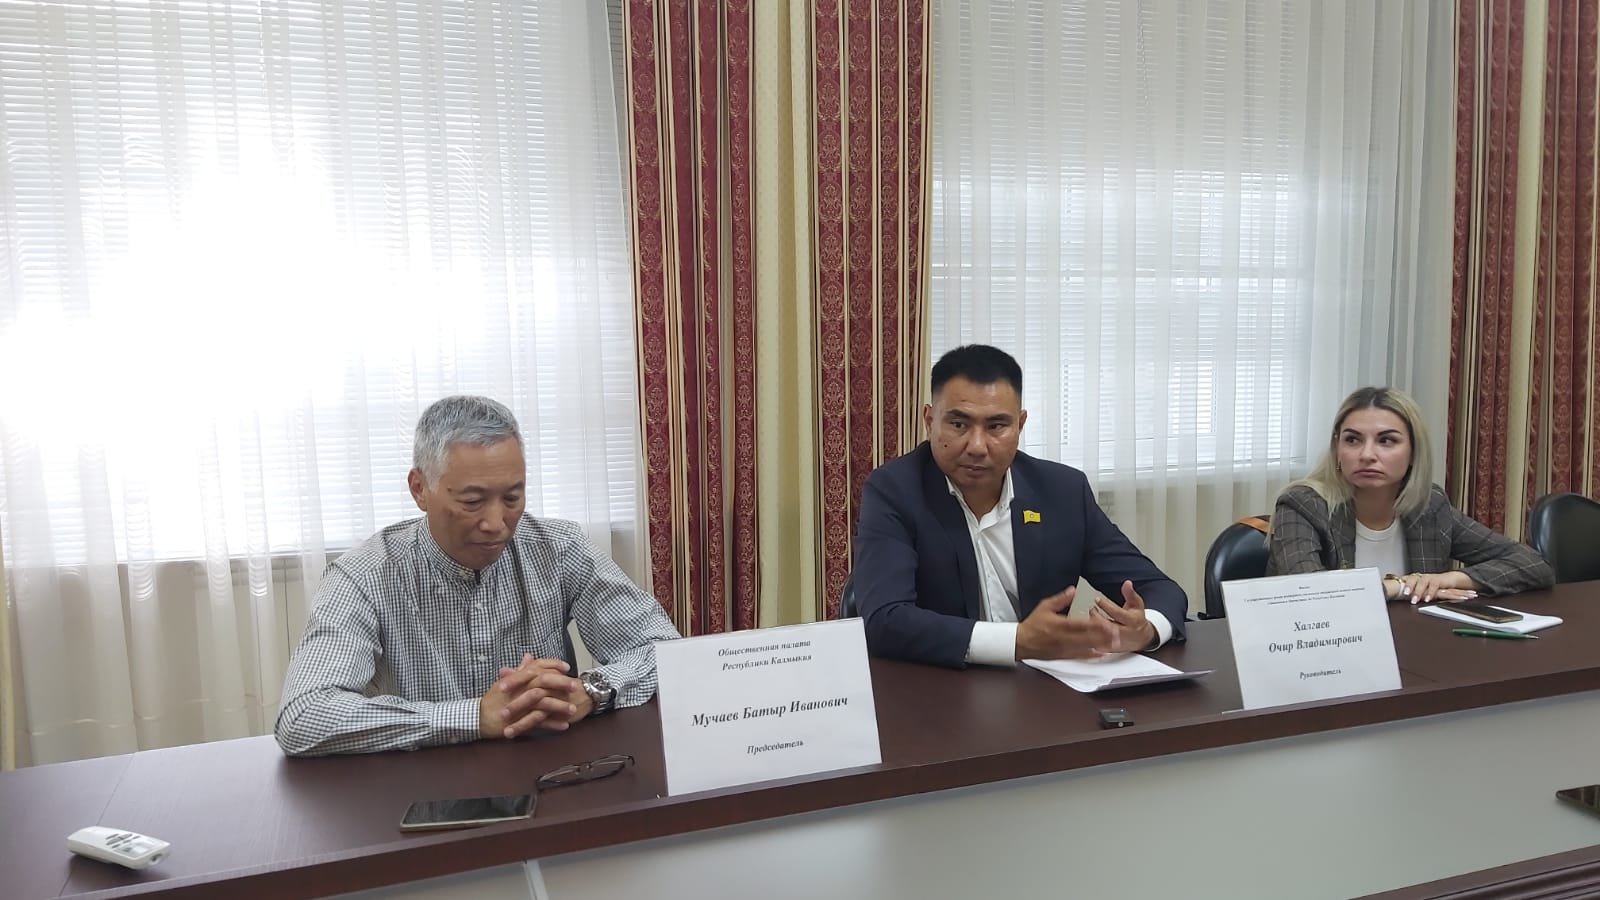 Общественная палата Республики Калмыкия провела круглый стол, посвященный деятельности Фонда "Защитники Отечества" РК